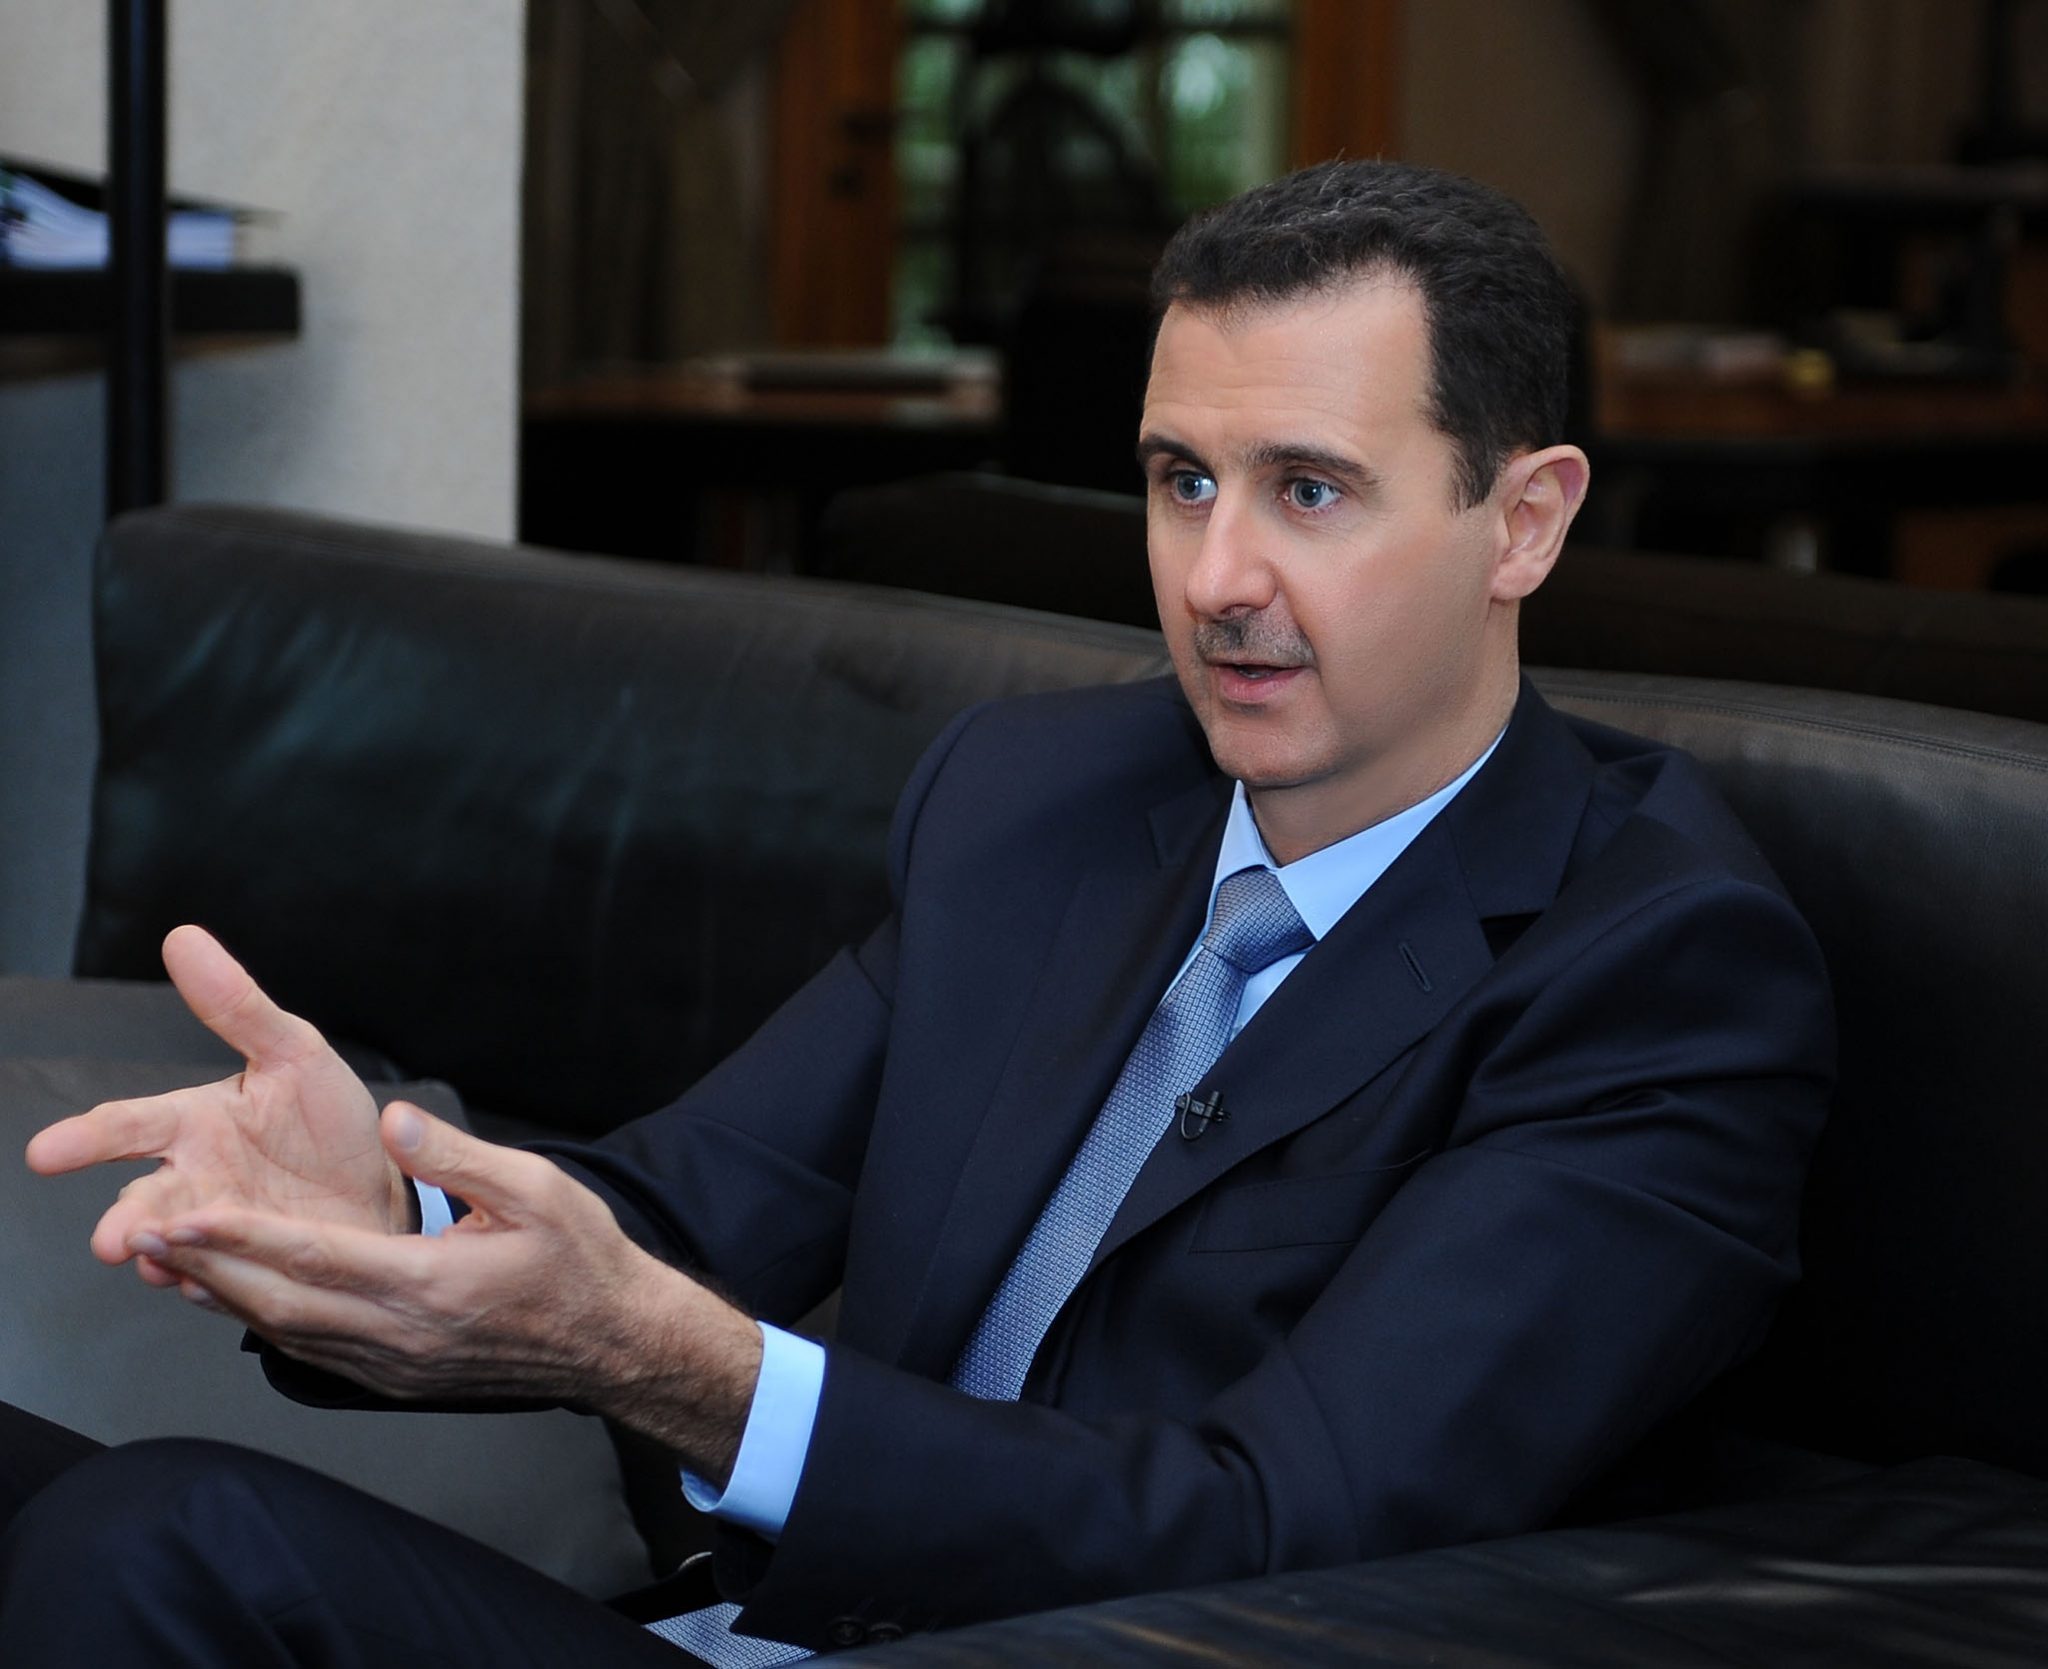   الأسد: الحرب على سوريا محاولة لضرب الهوية والثقافة العربية